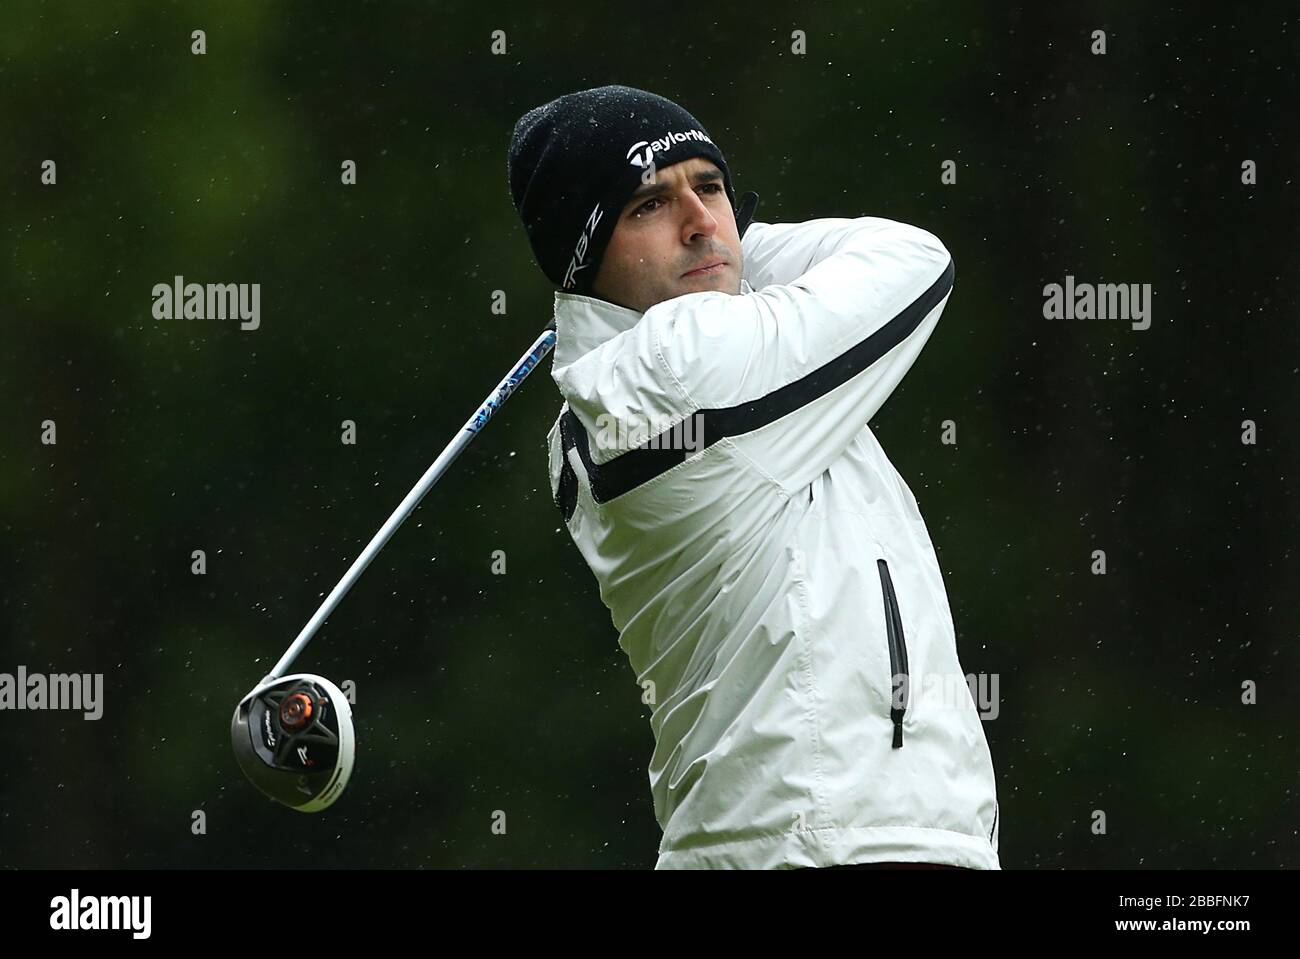 Fabrizio Zanotti del Paraguay durante il secondo giorno del campionato PGA BMW 2013, al Wentworth Golf Club. Foto Stock